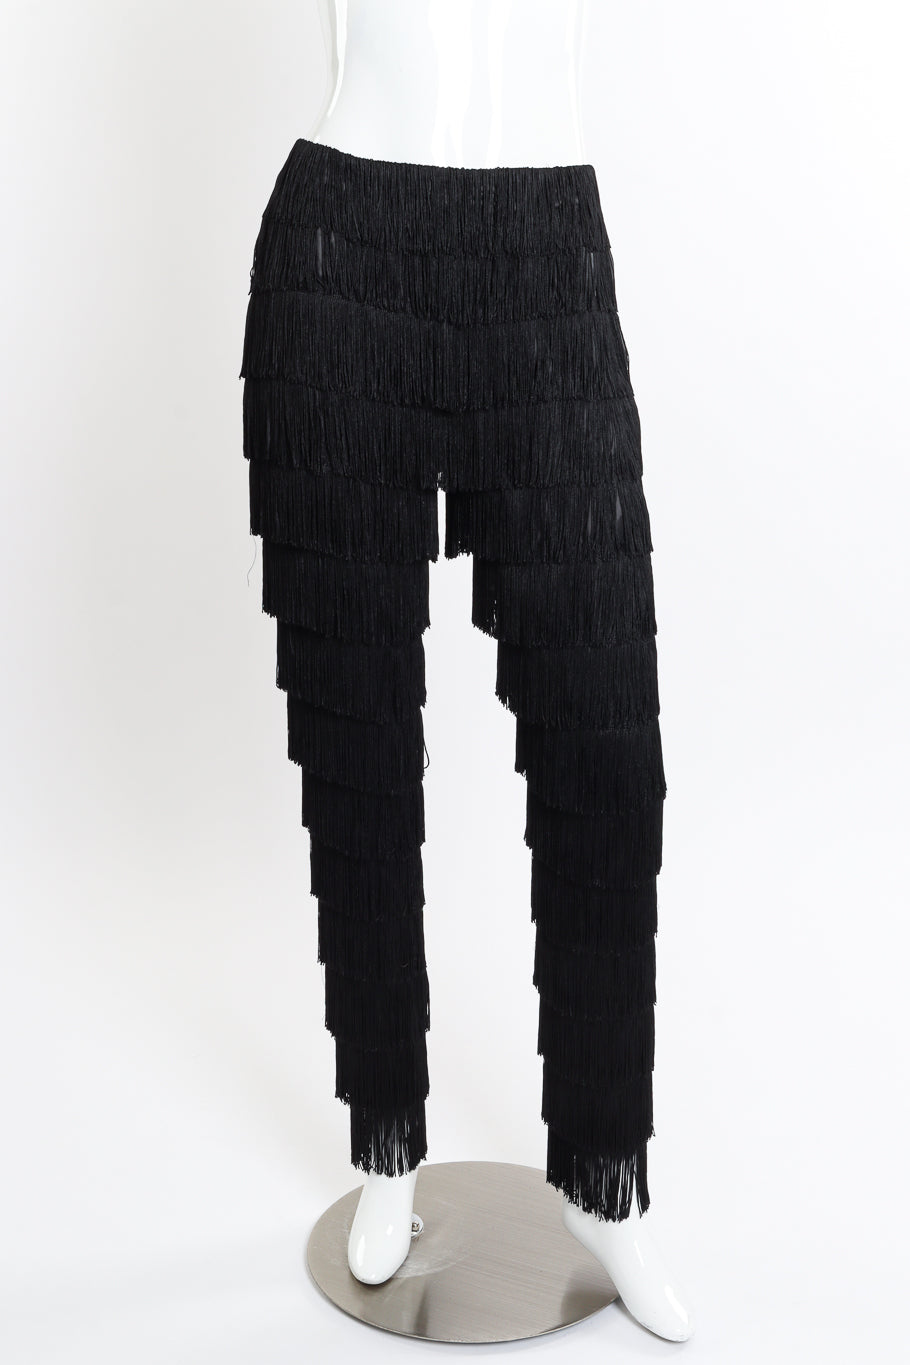 Vintage Kors Fringe Pants front on mannequin @recessla